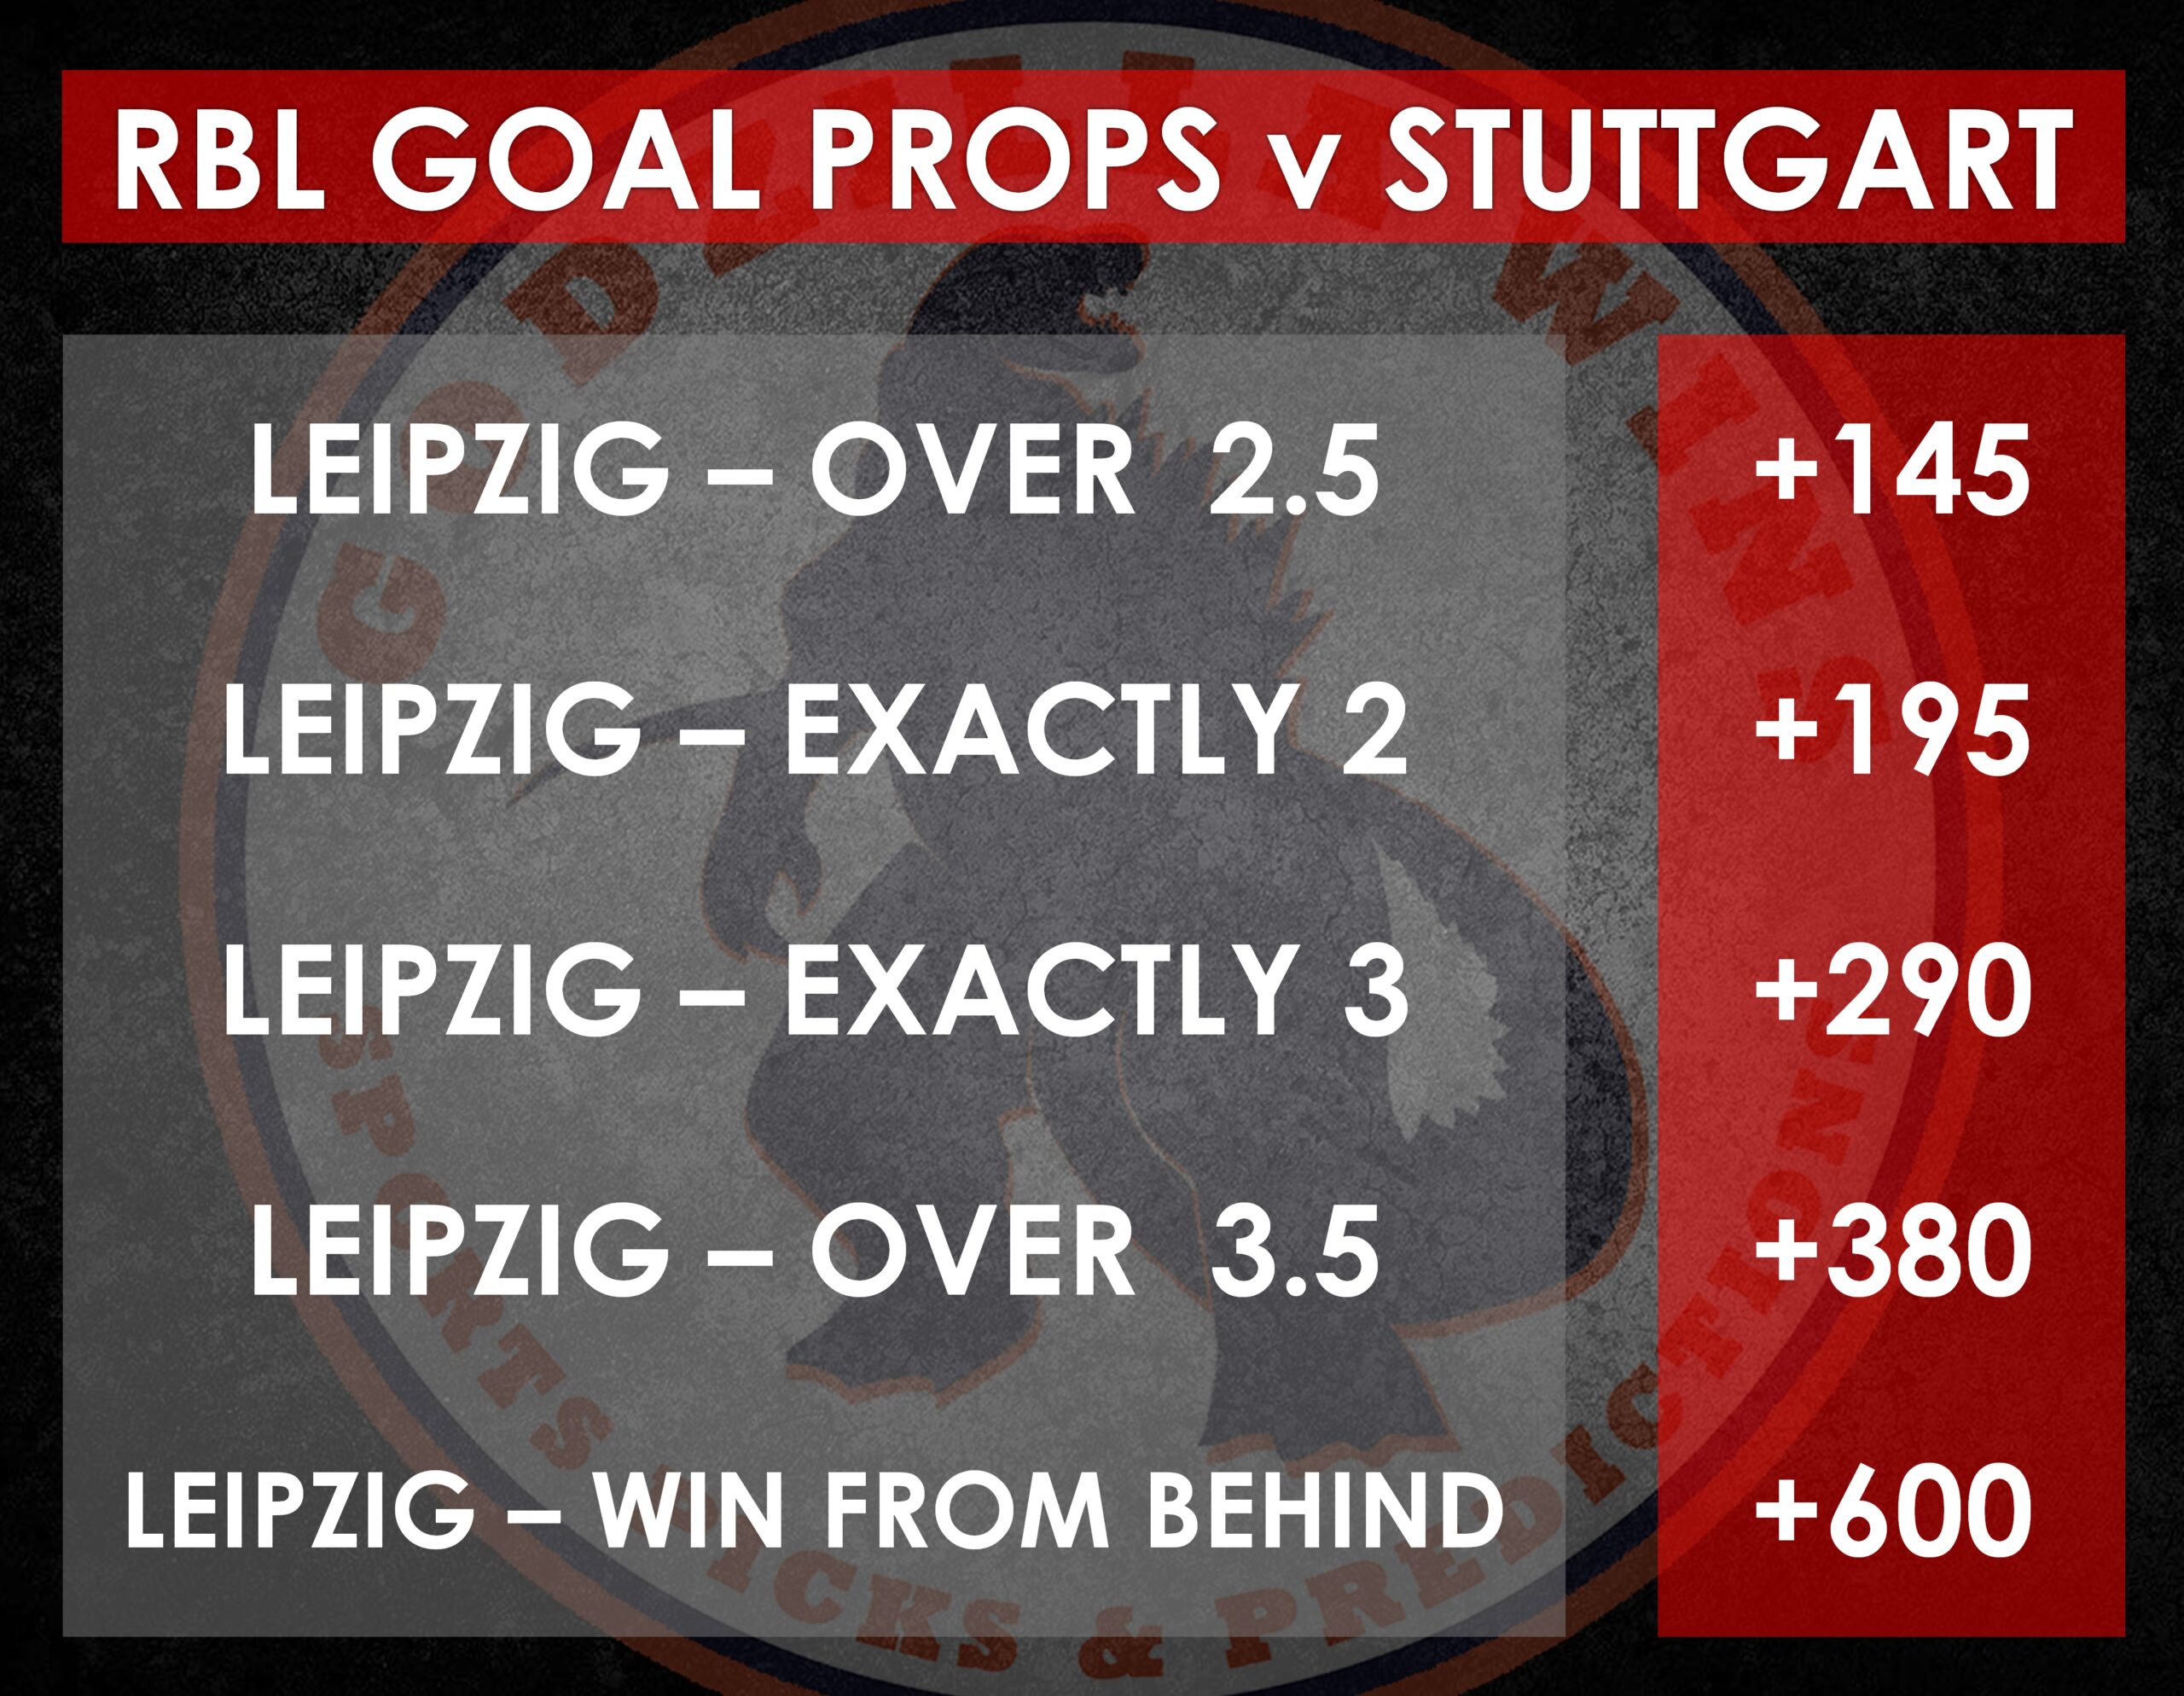 RB Leipzig v Stuttgart props